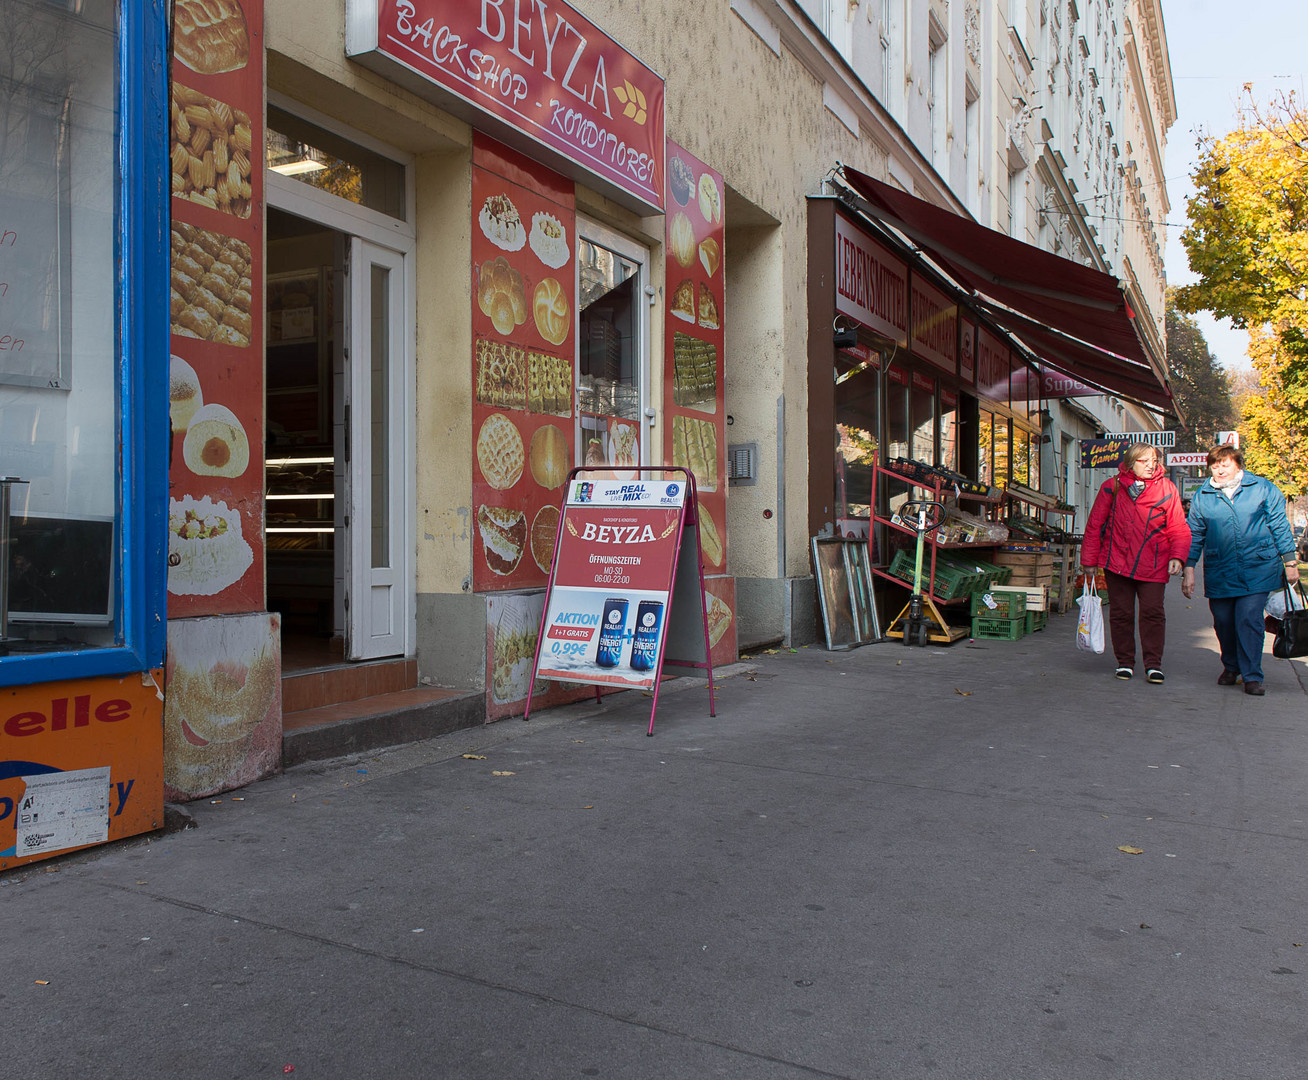 Straßen Szene in "Klein Istanbul" Wien, 20. Bez., Brigittenau